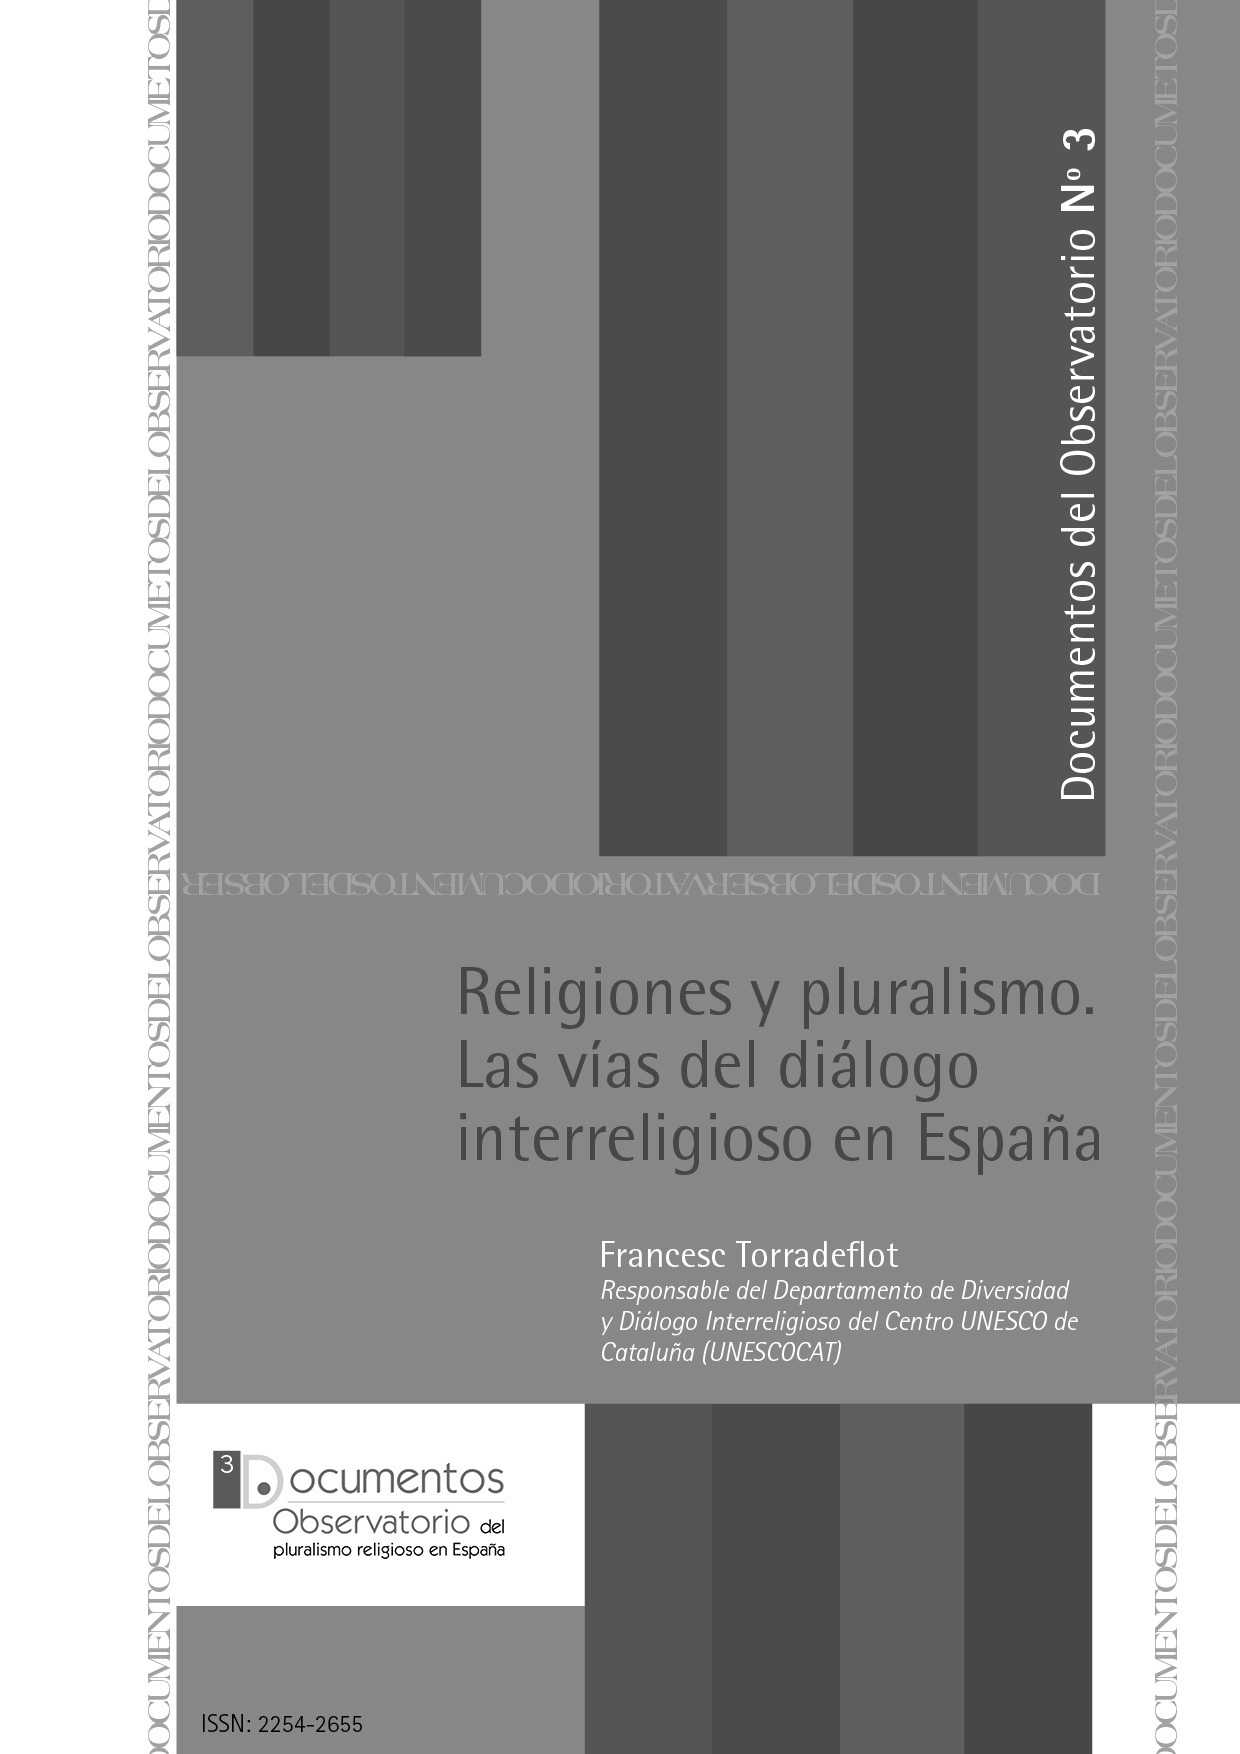 Religiones y pluralismo. Las vías del diálogo interreligioso en España.